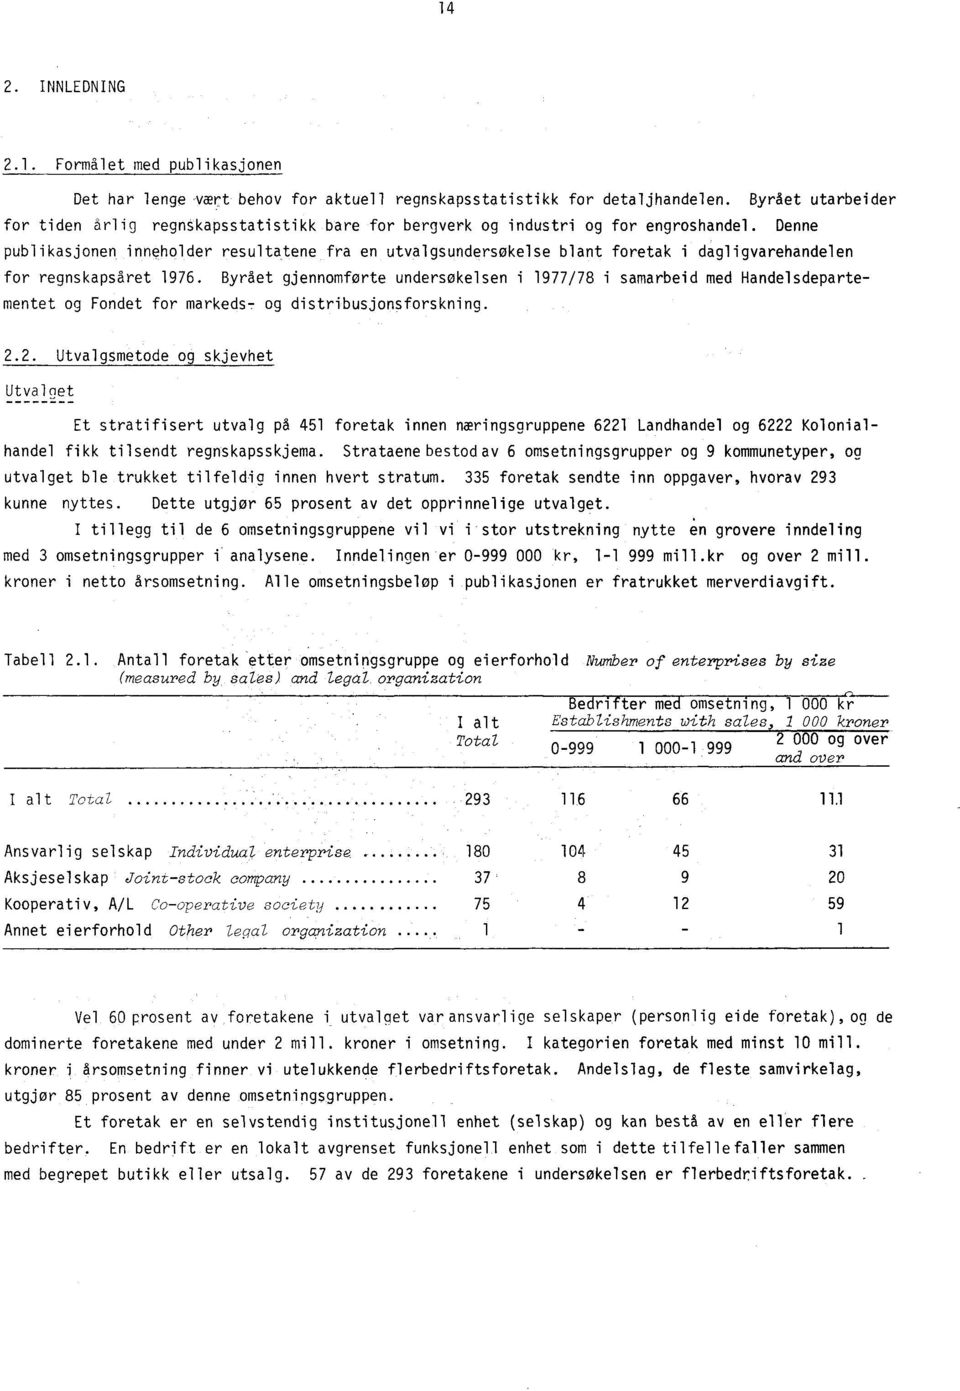 Denne publikasjonen inneholder resultatene fra en utvalgsundersøkelse blant foretak i dagligvarehandelen for regnskapsåret 1976.